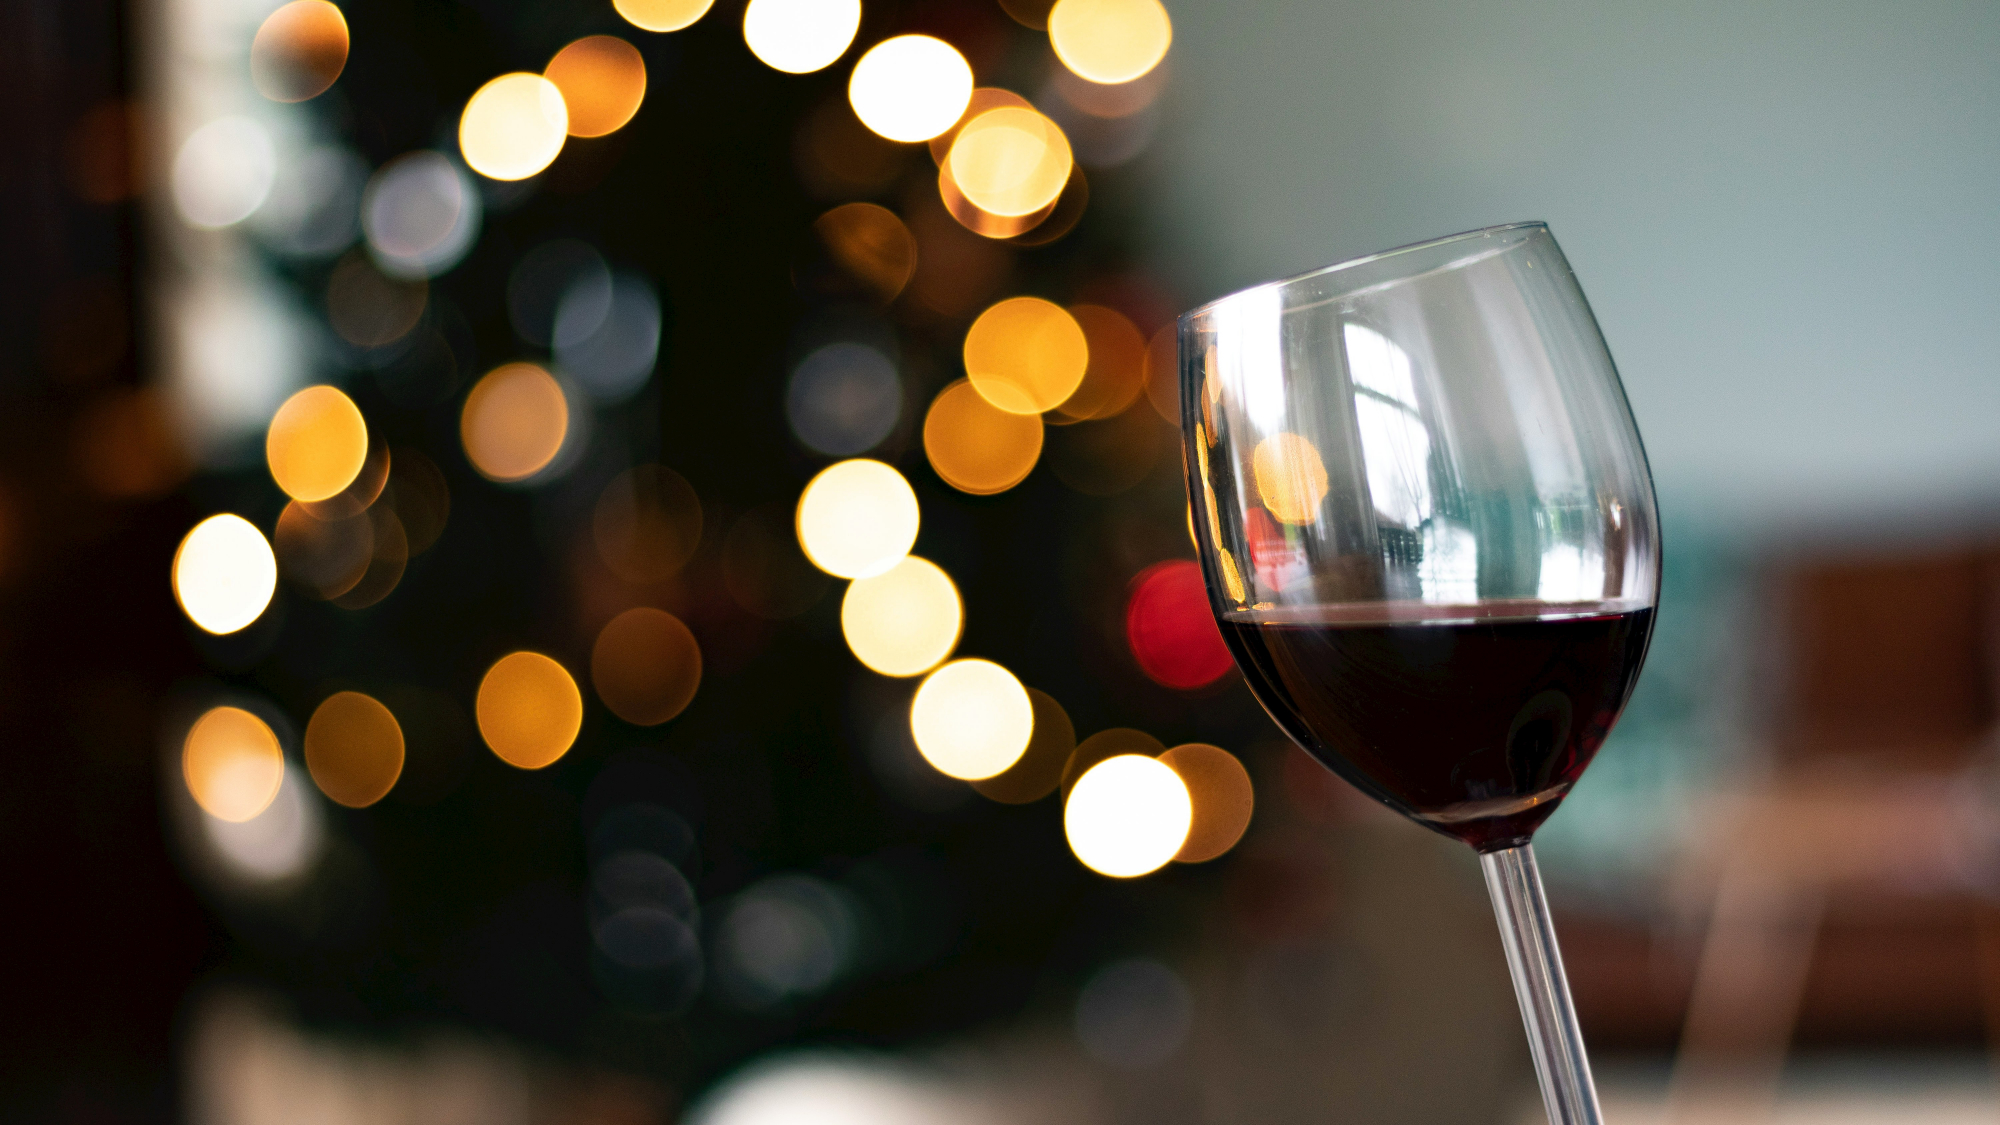 découvrez une sélection de vins rouges de qualité supérieure pour accompagner vos repas ou vos moments de détente. trouvez le parfait équilibre entre arômes riches et texture veloutée pour votre plaisir gustatif.